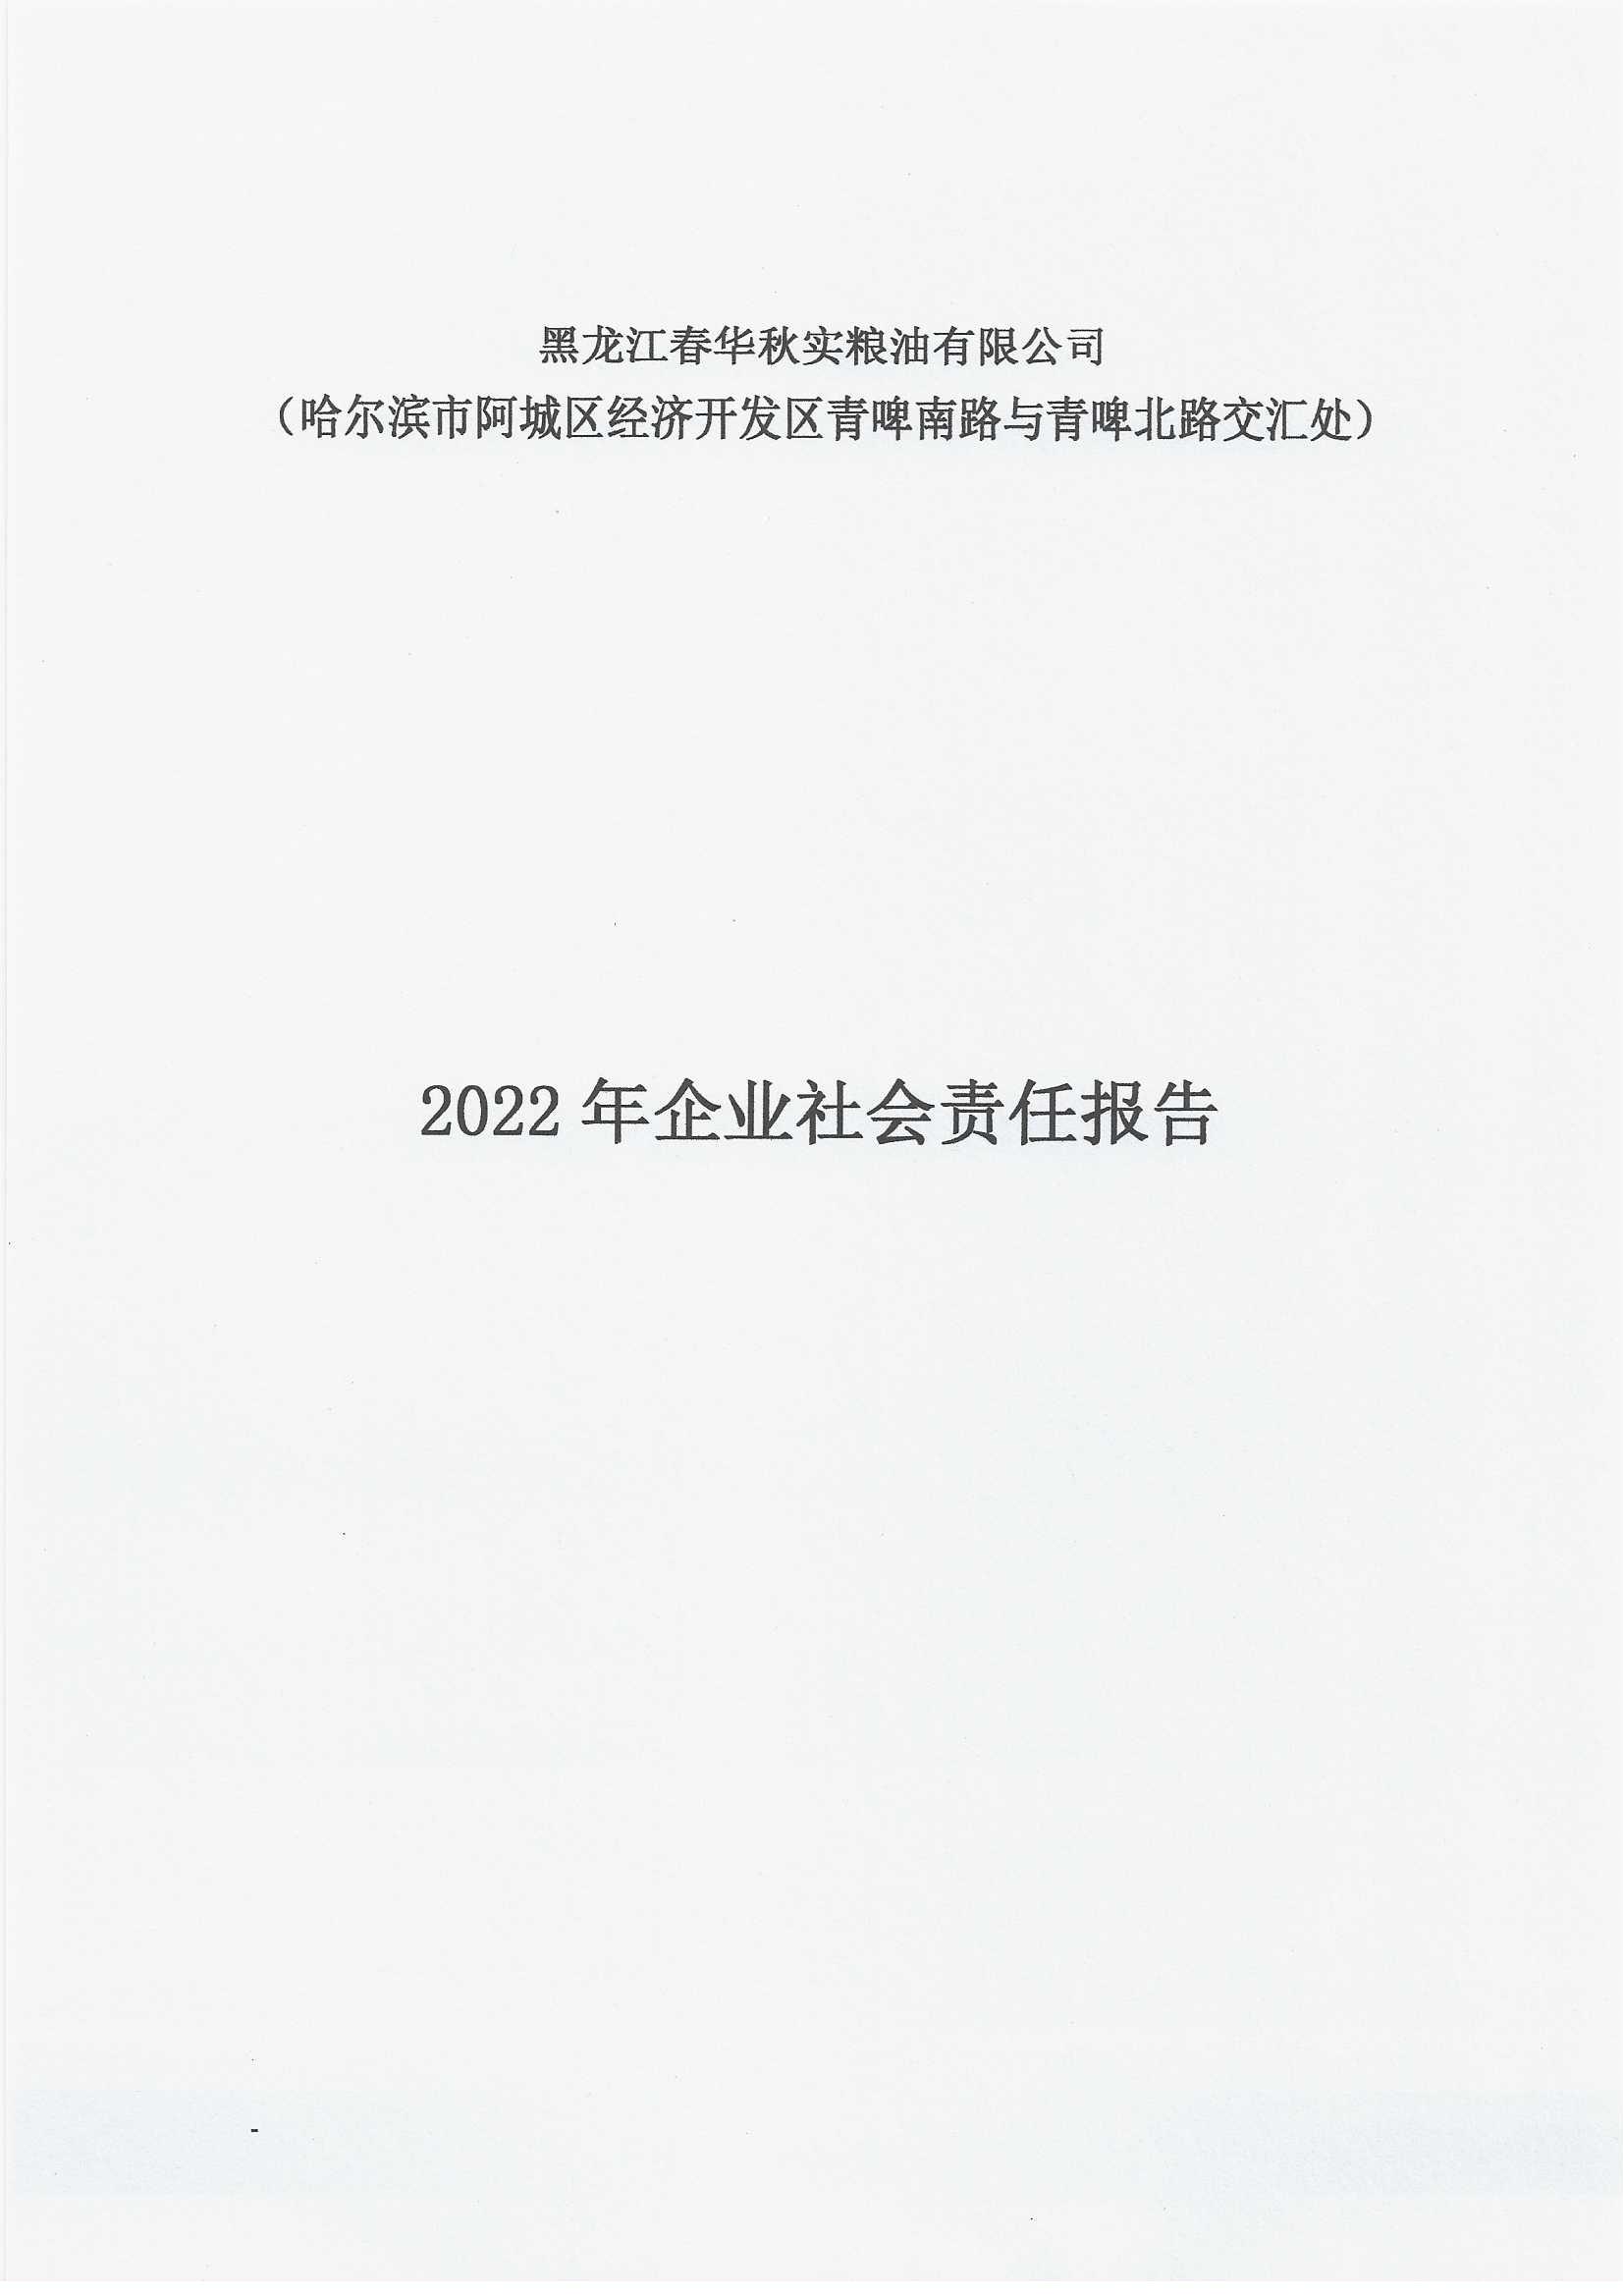 2022年企業社會責任報告(圖1)